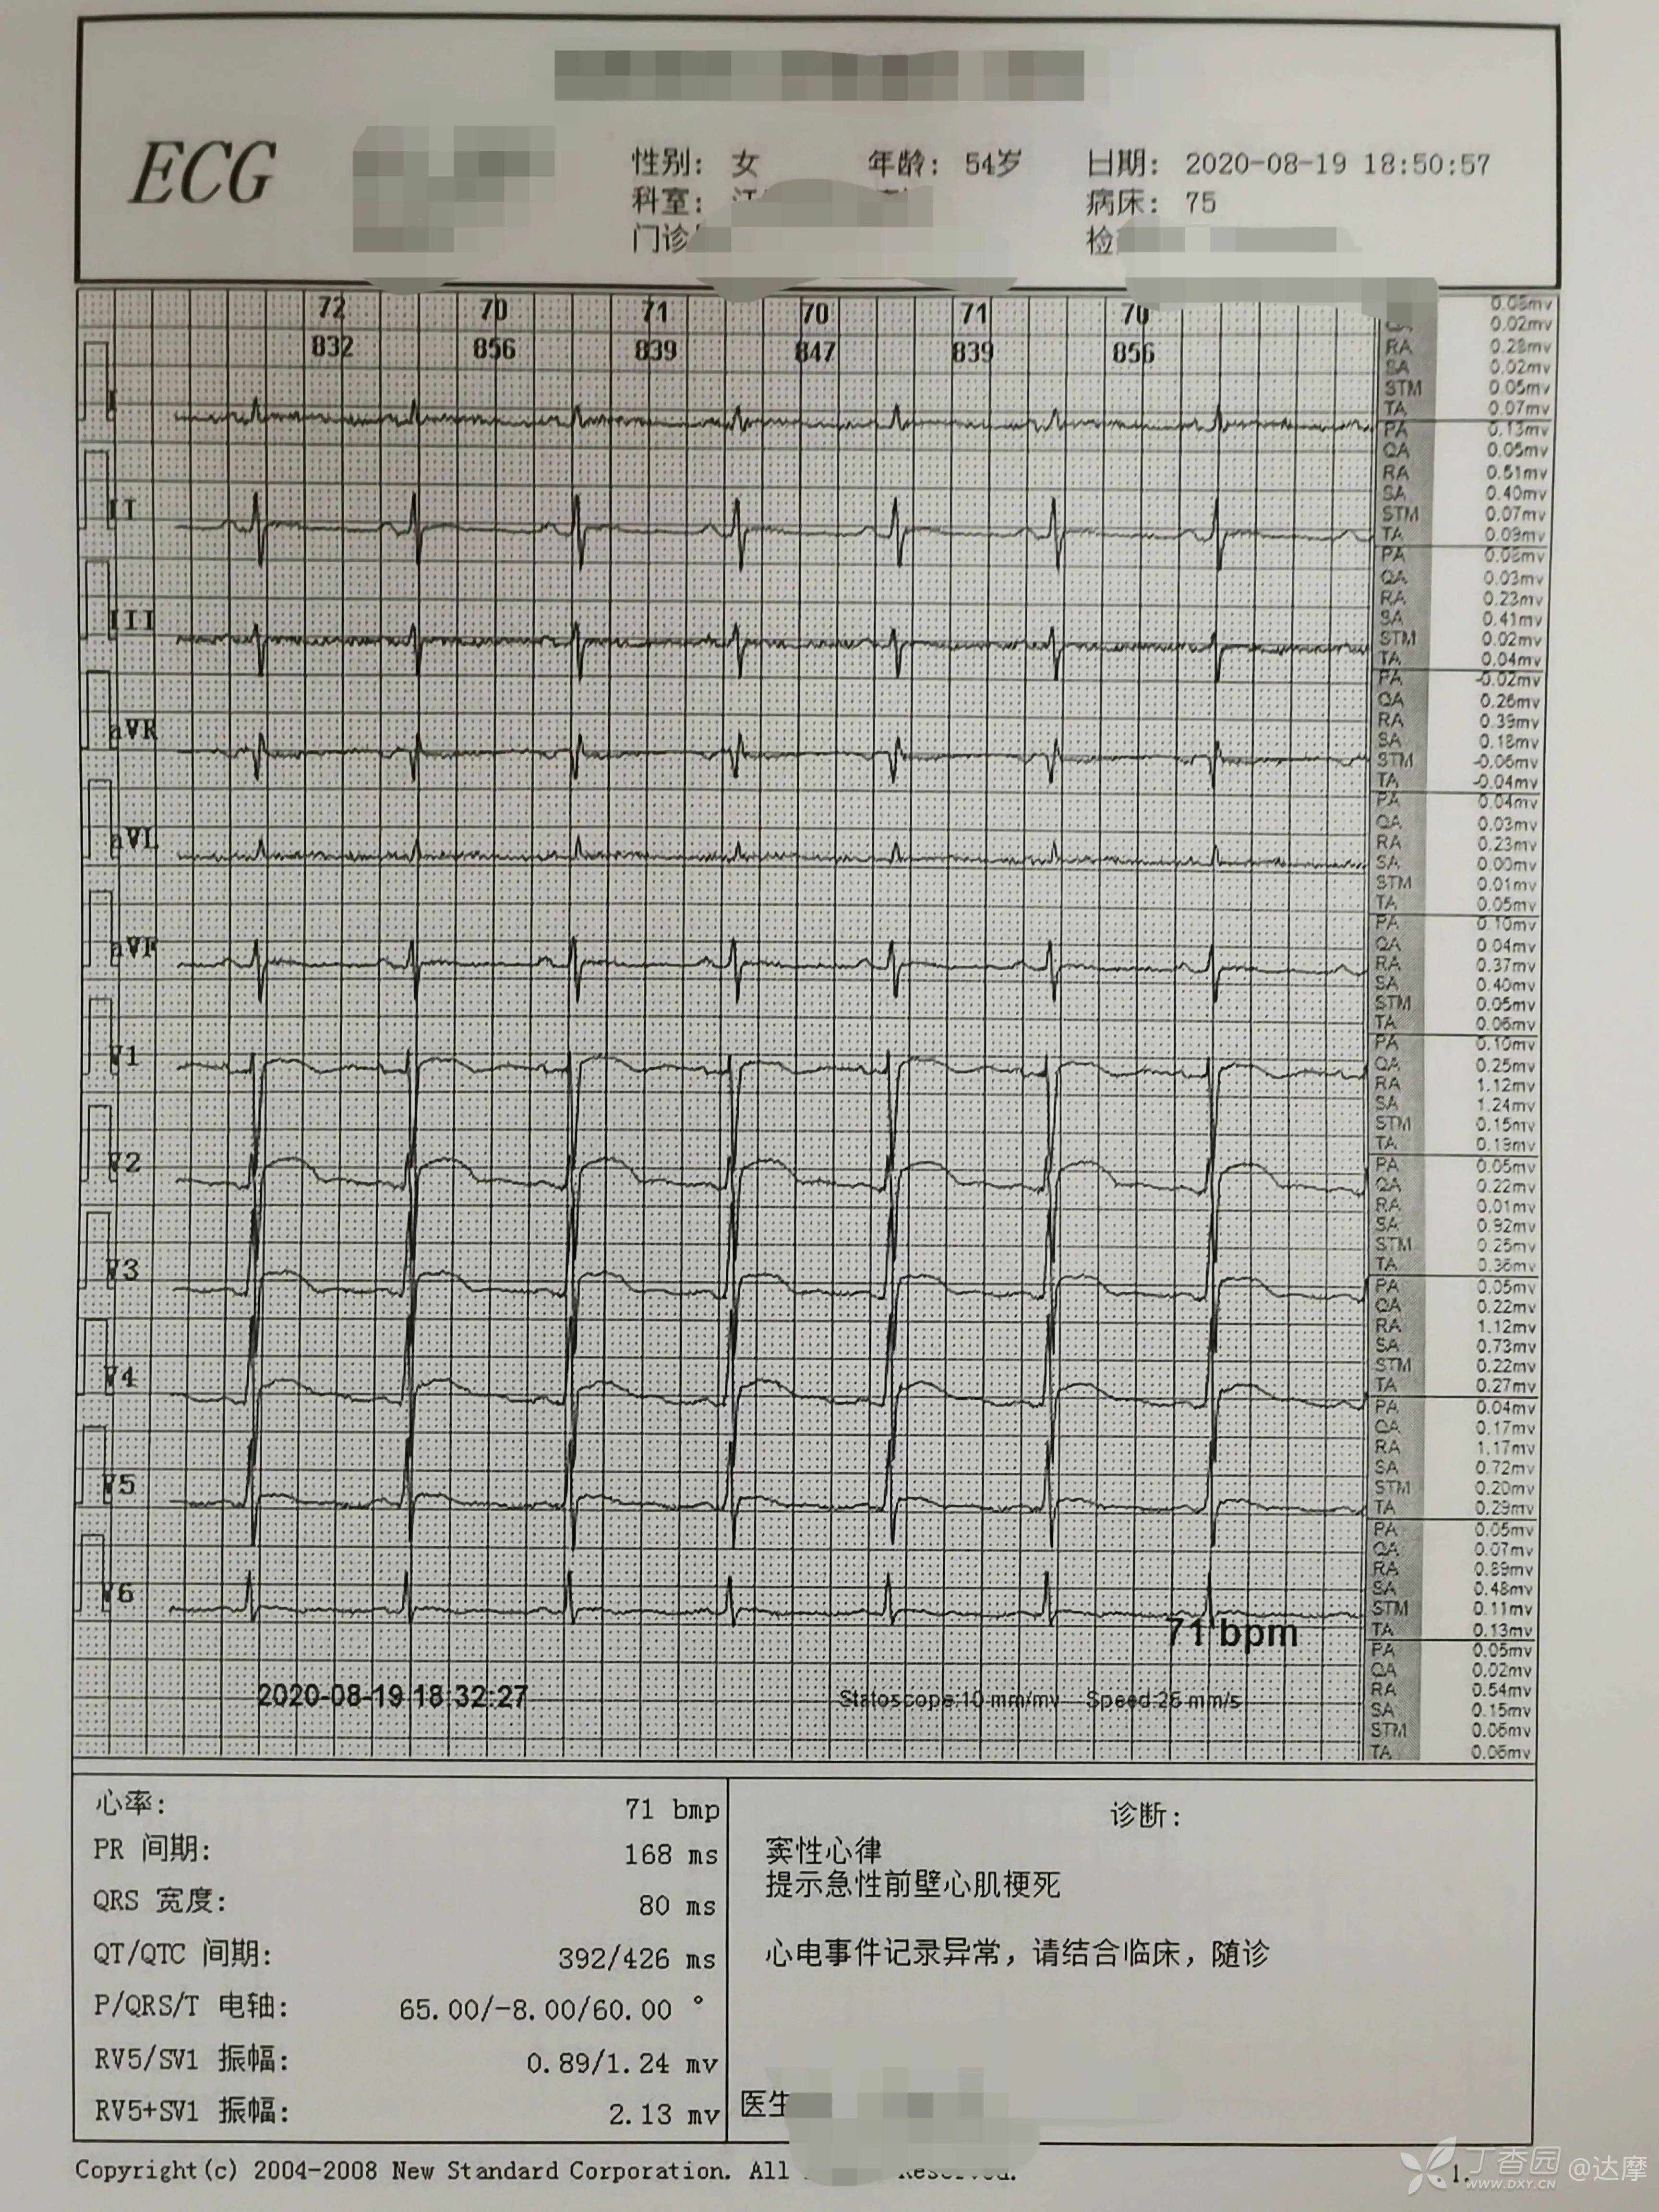 急性心梗心电图分期图片